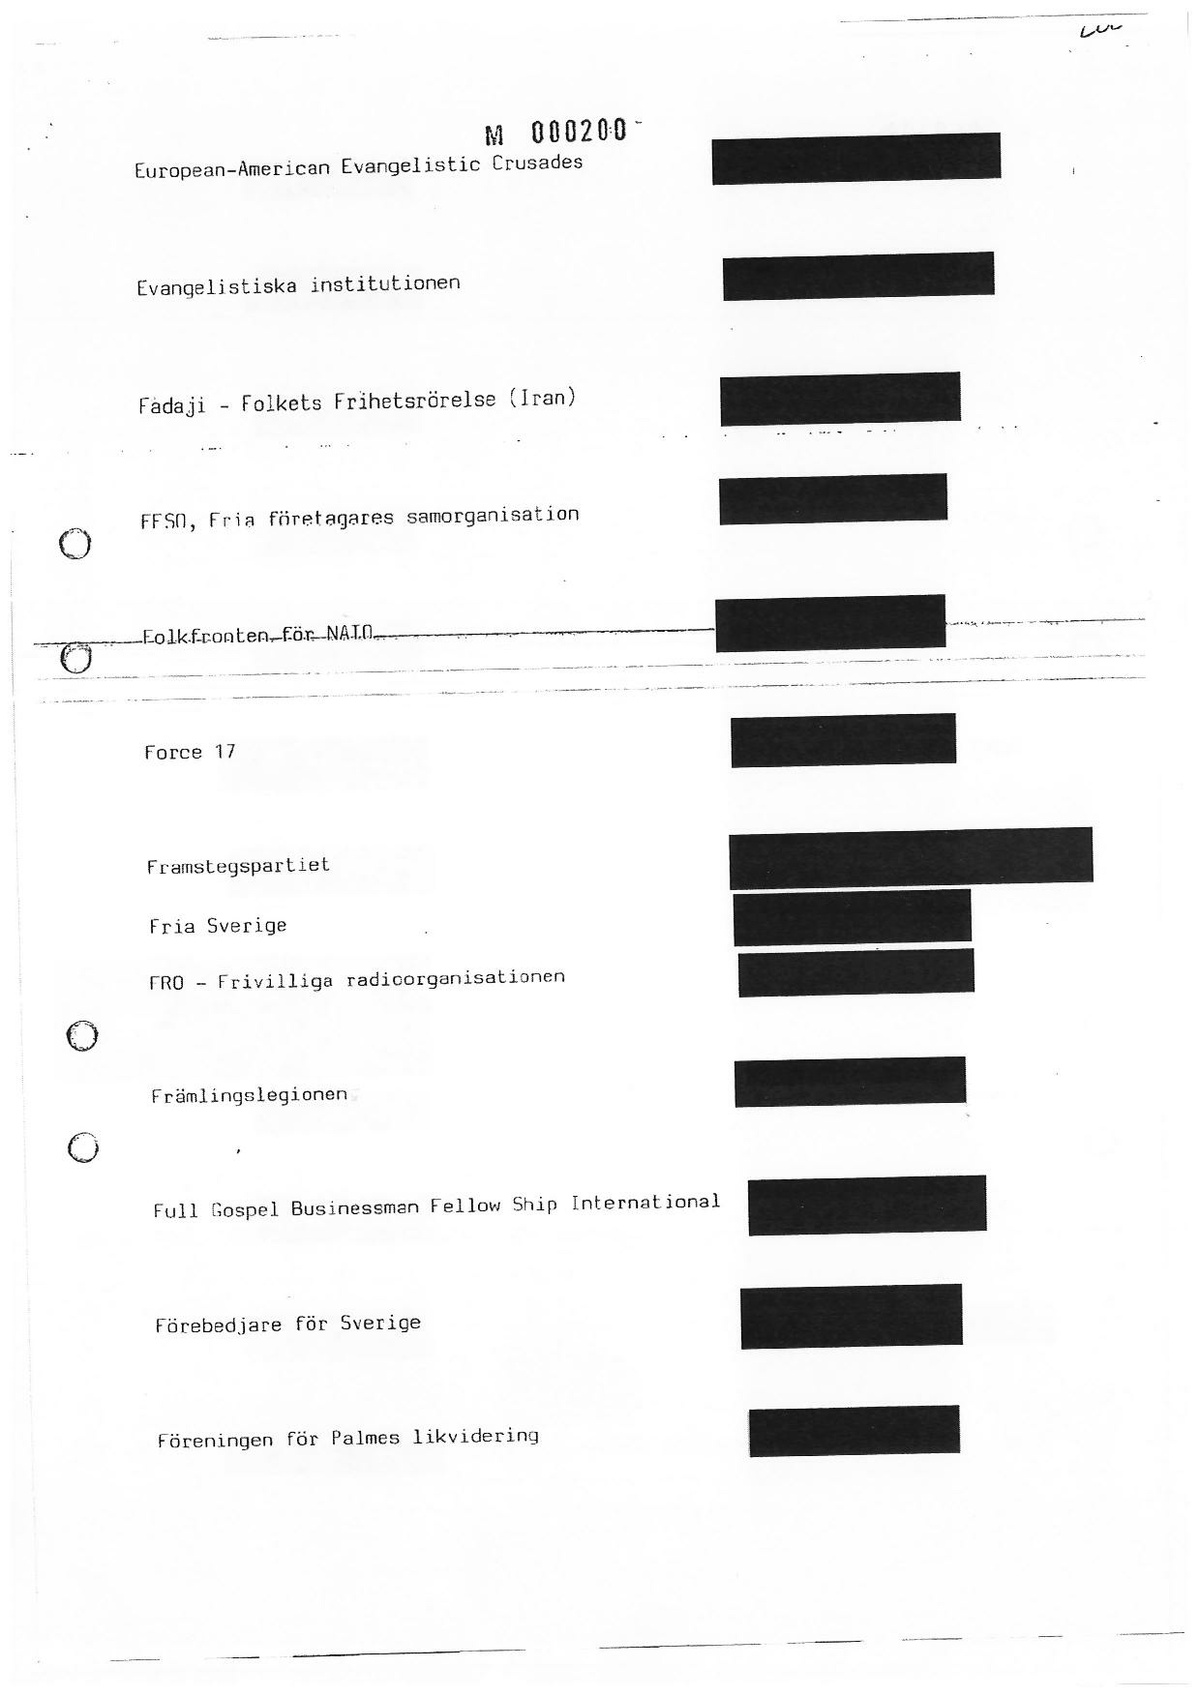 Pol-1987-10-14 H7132-00 Sammanställning-organisationer.pdf